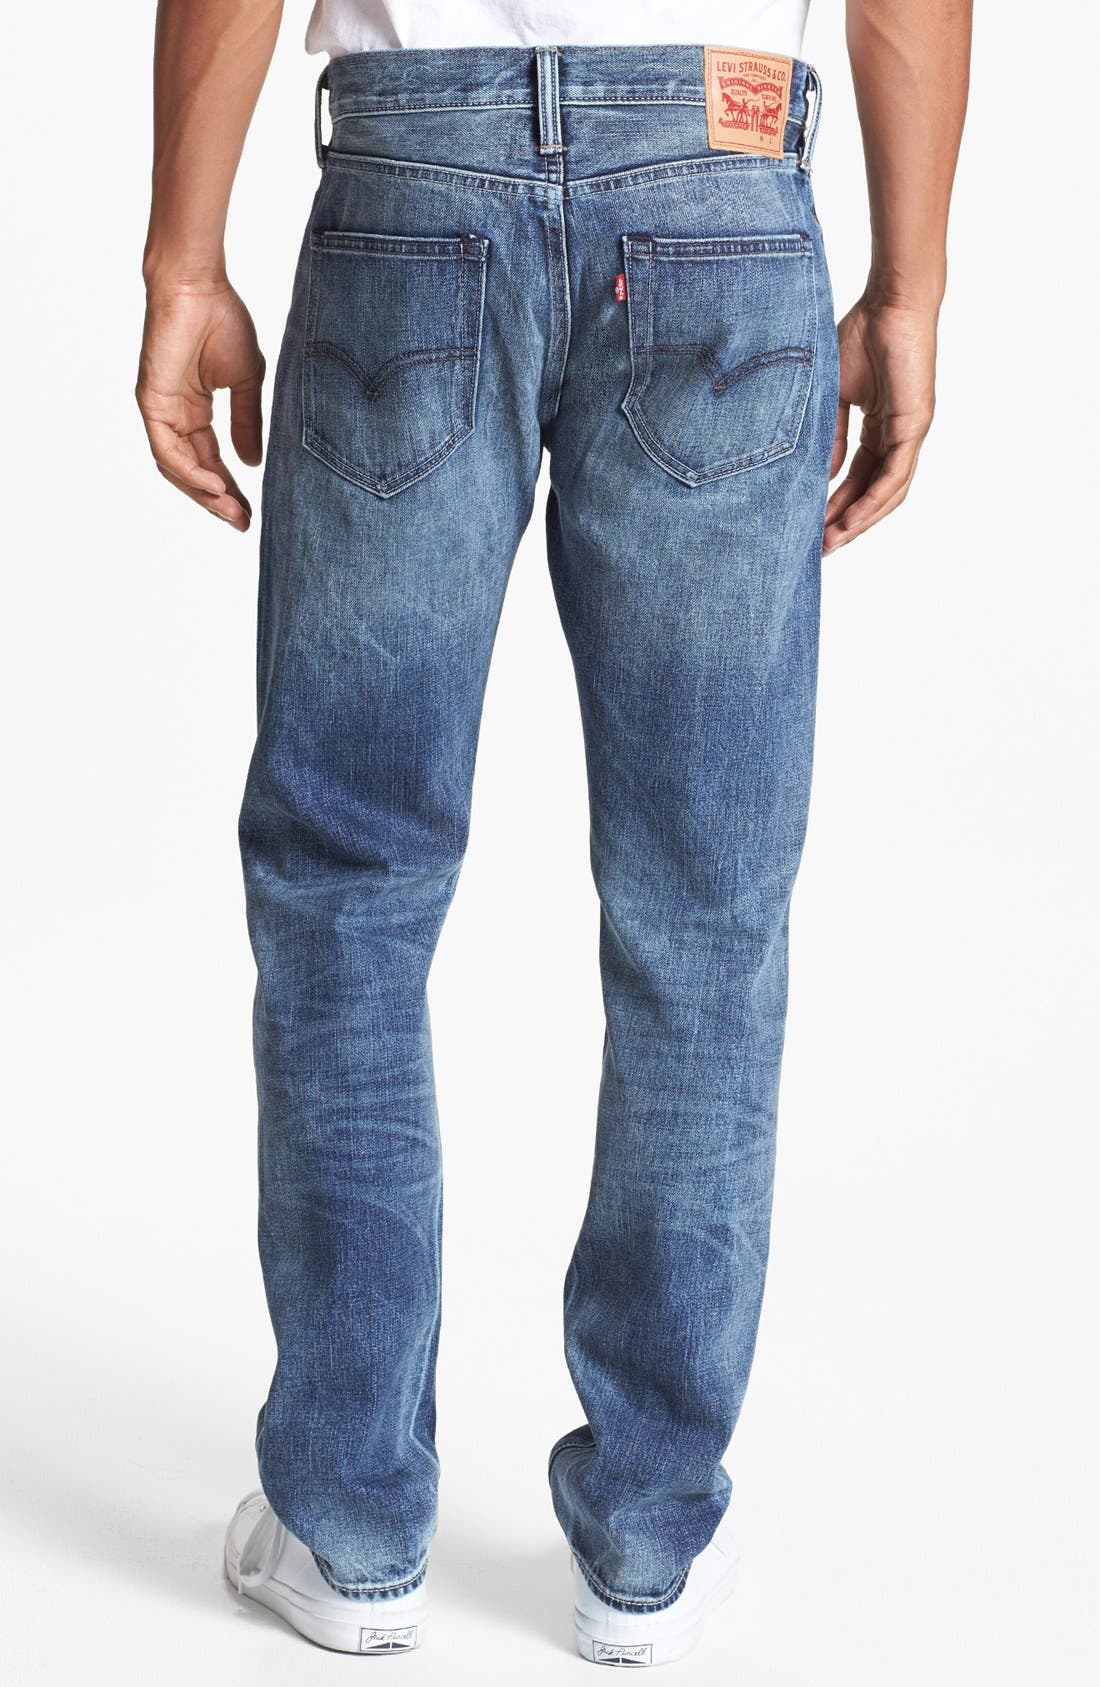 508 levi jeans